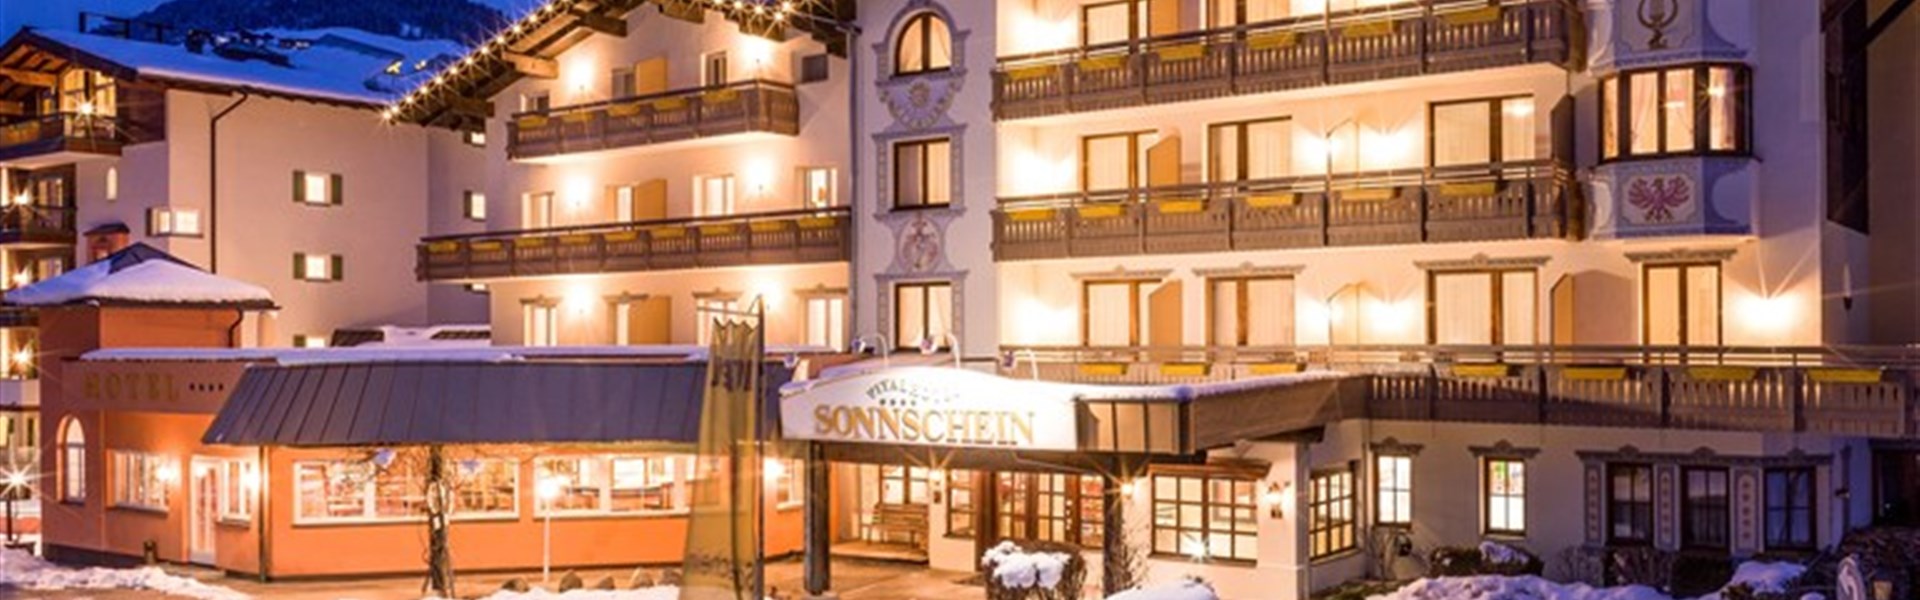 Harmony Hotel Sonnschein - 